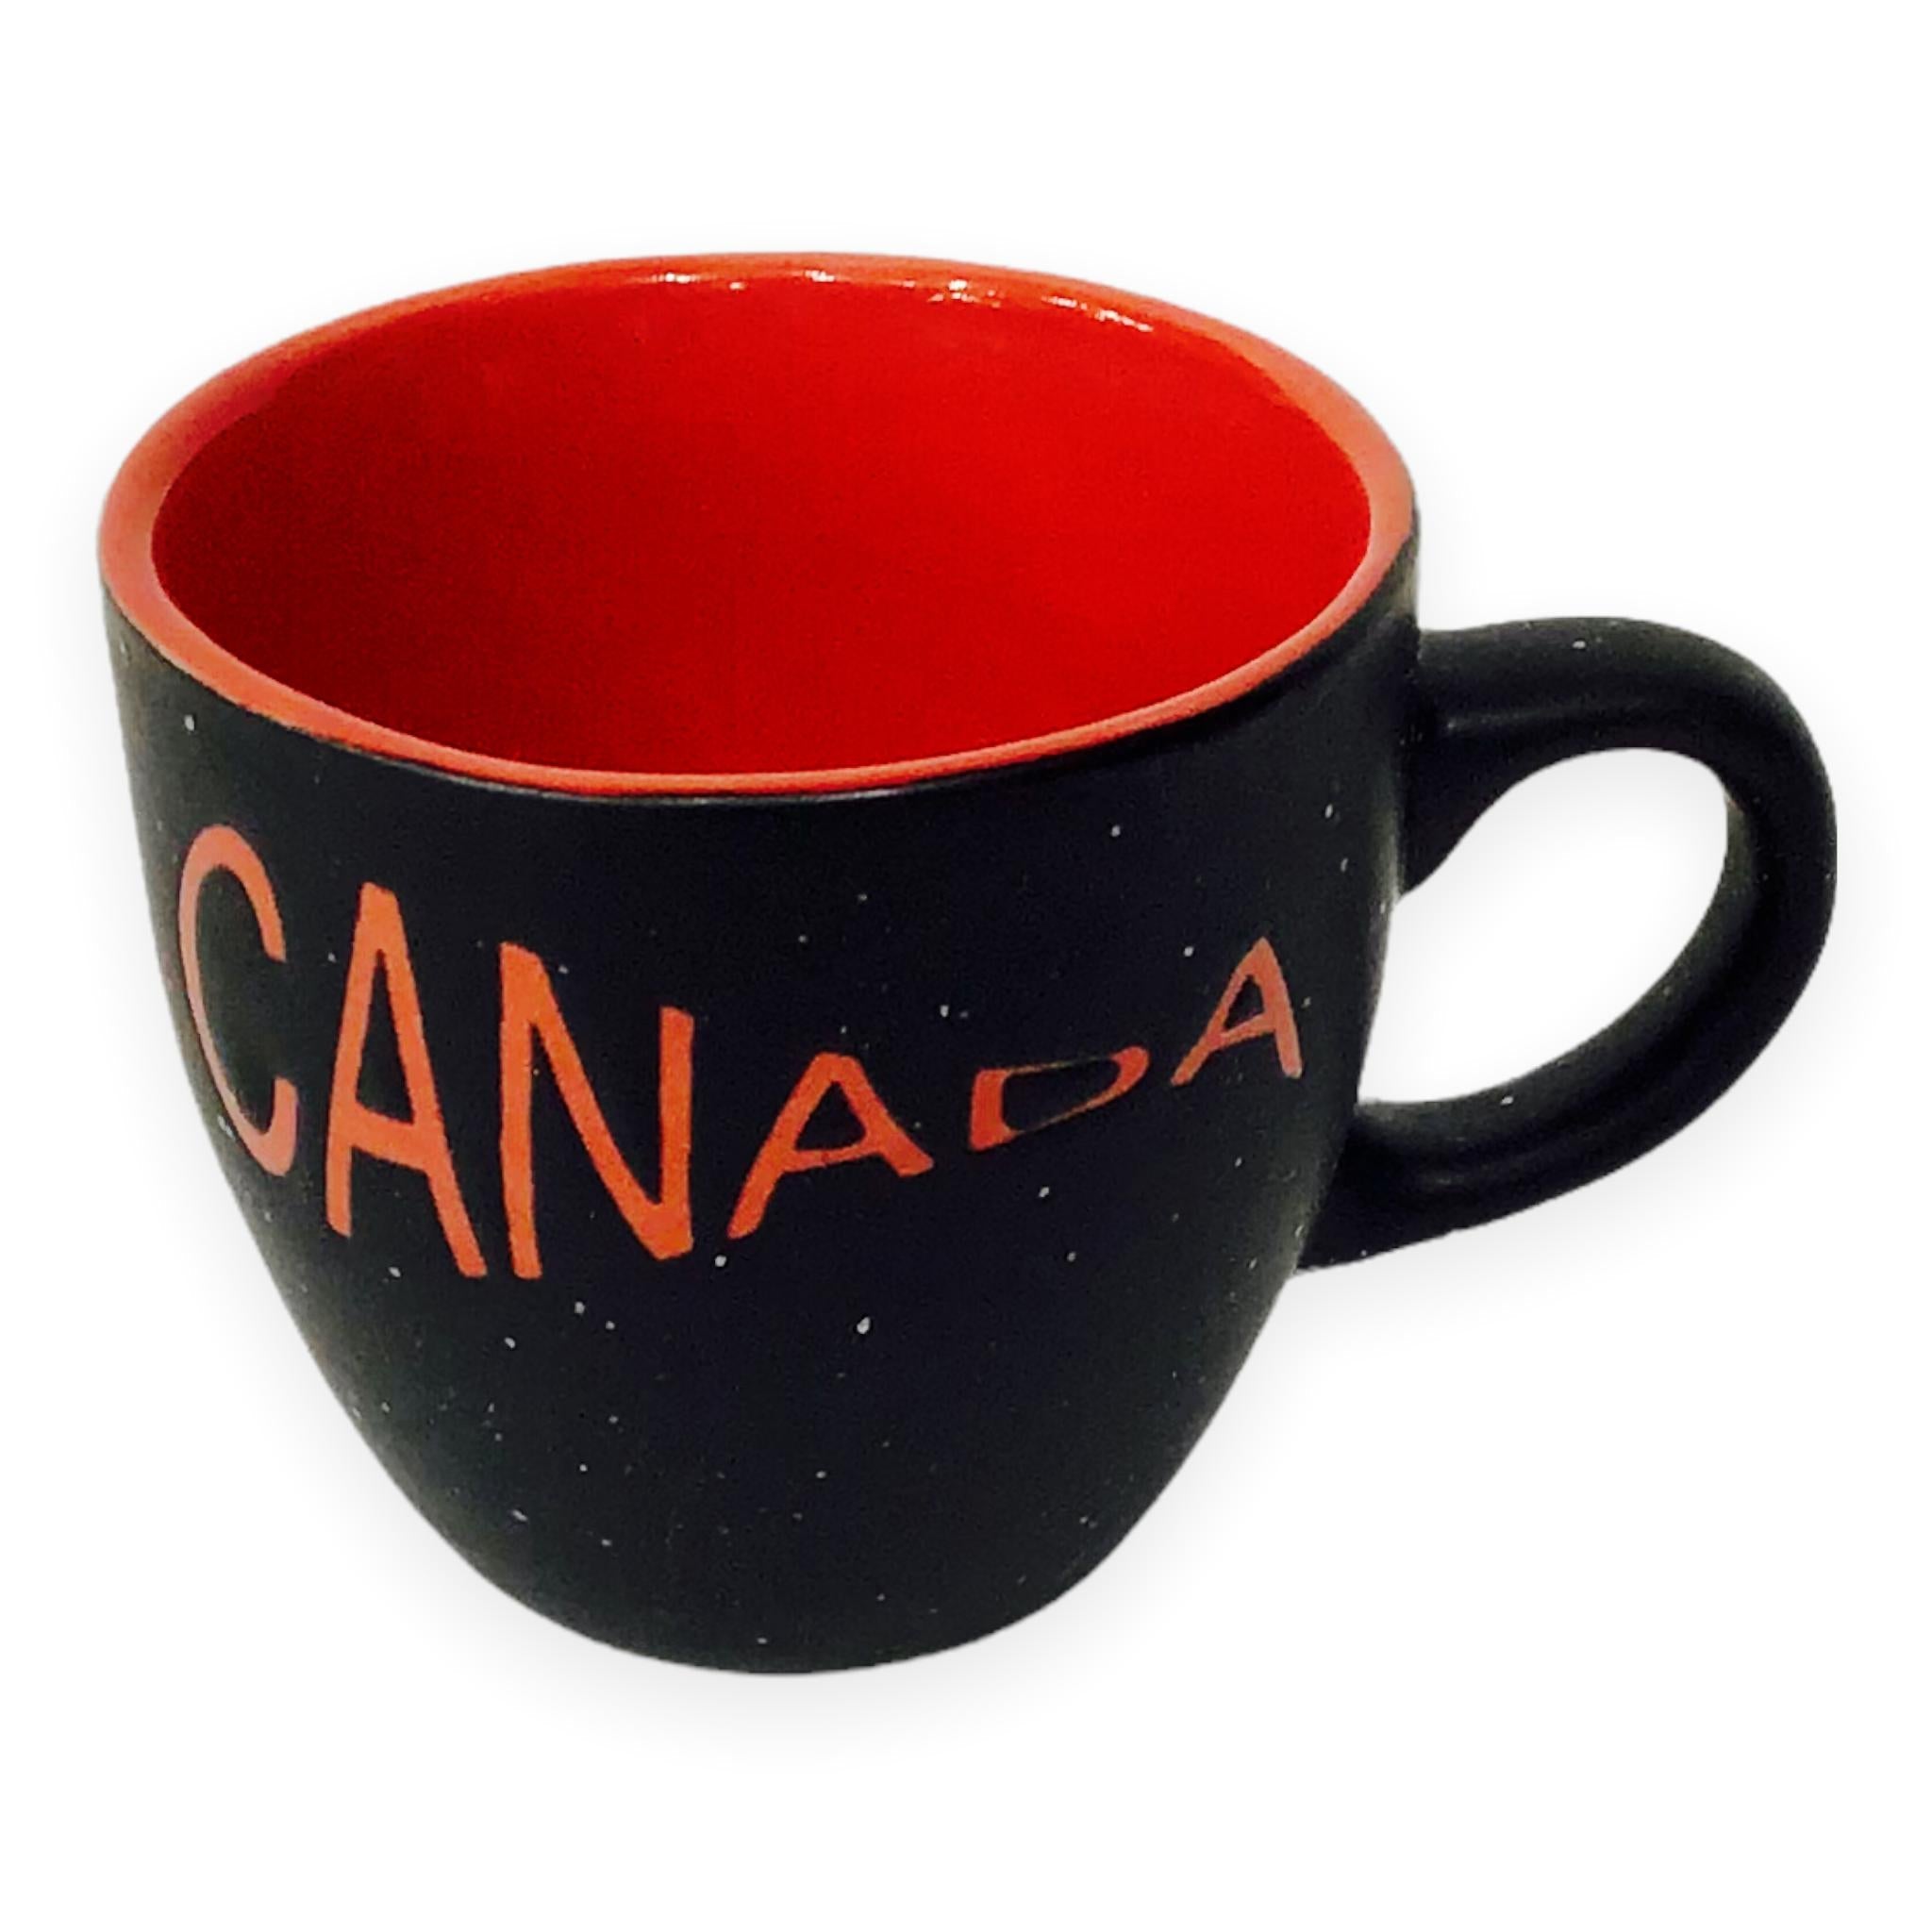 Espresso Cup Canada Red and Black 3oz Mug